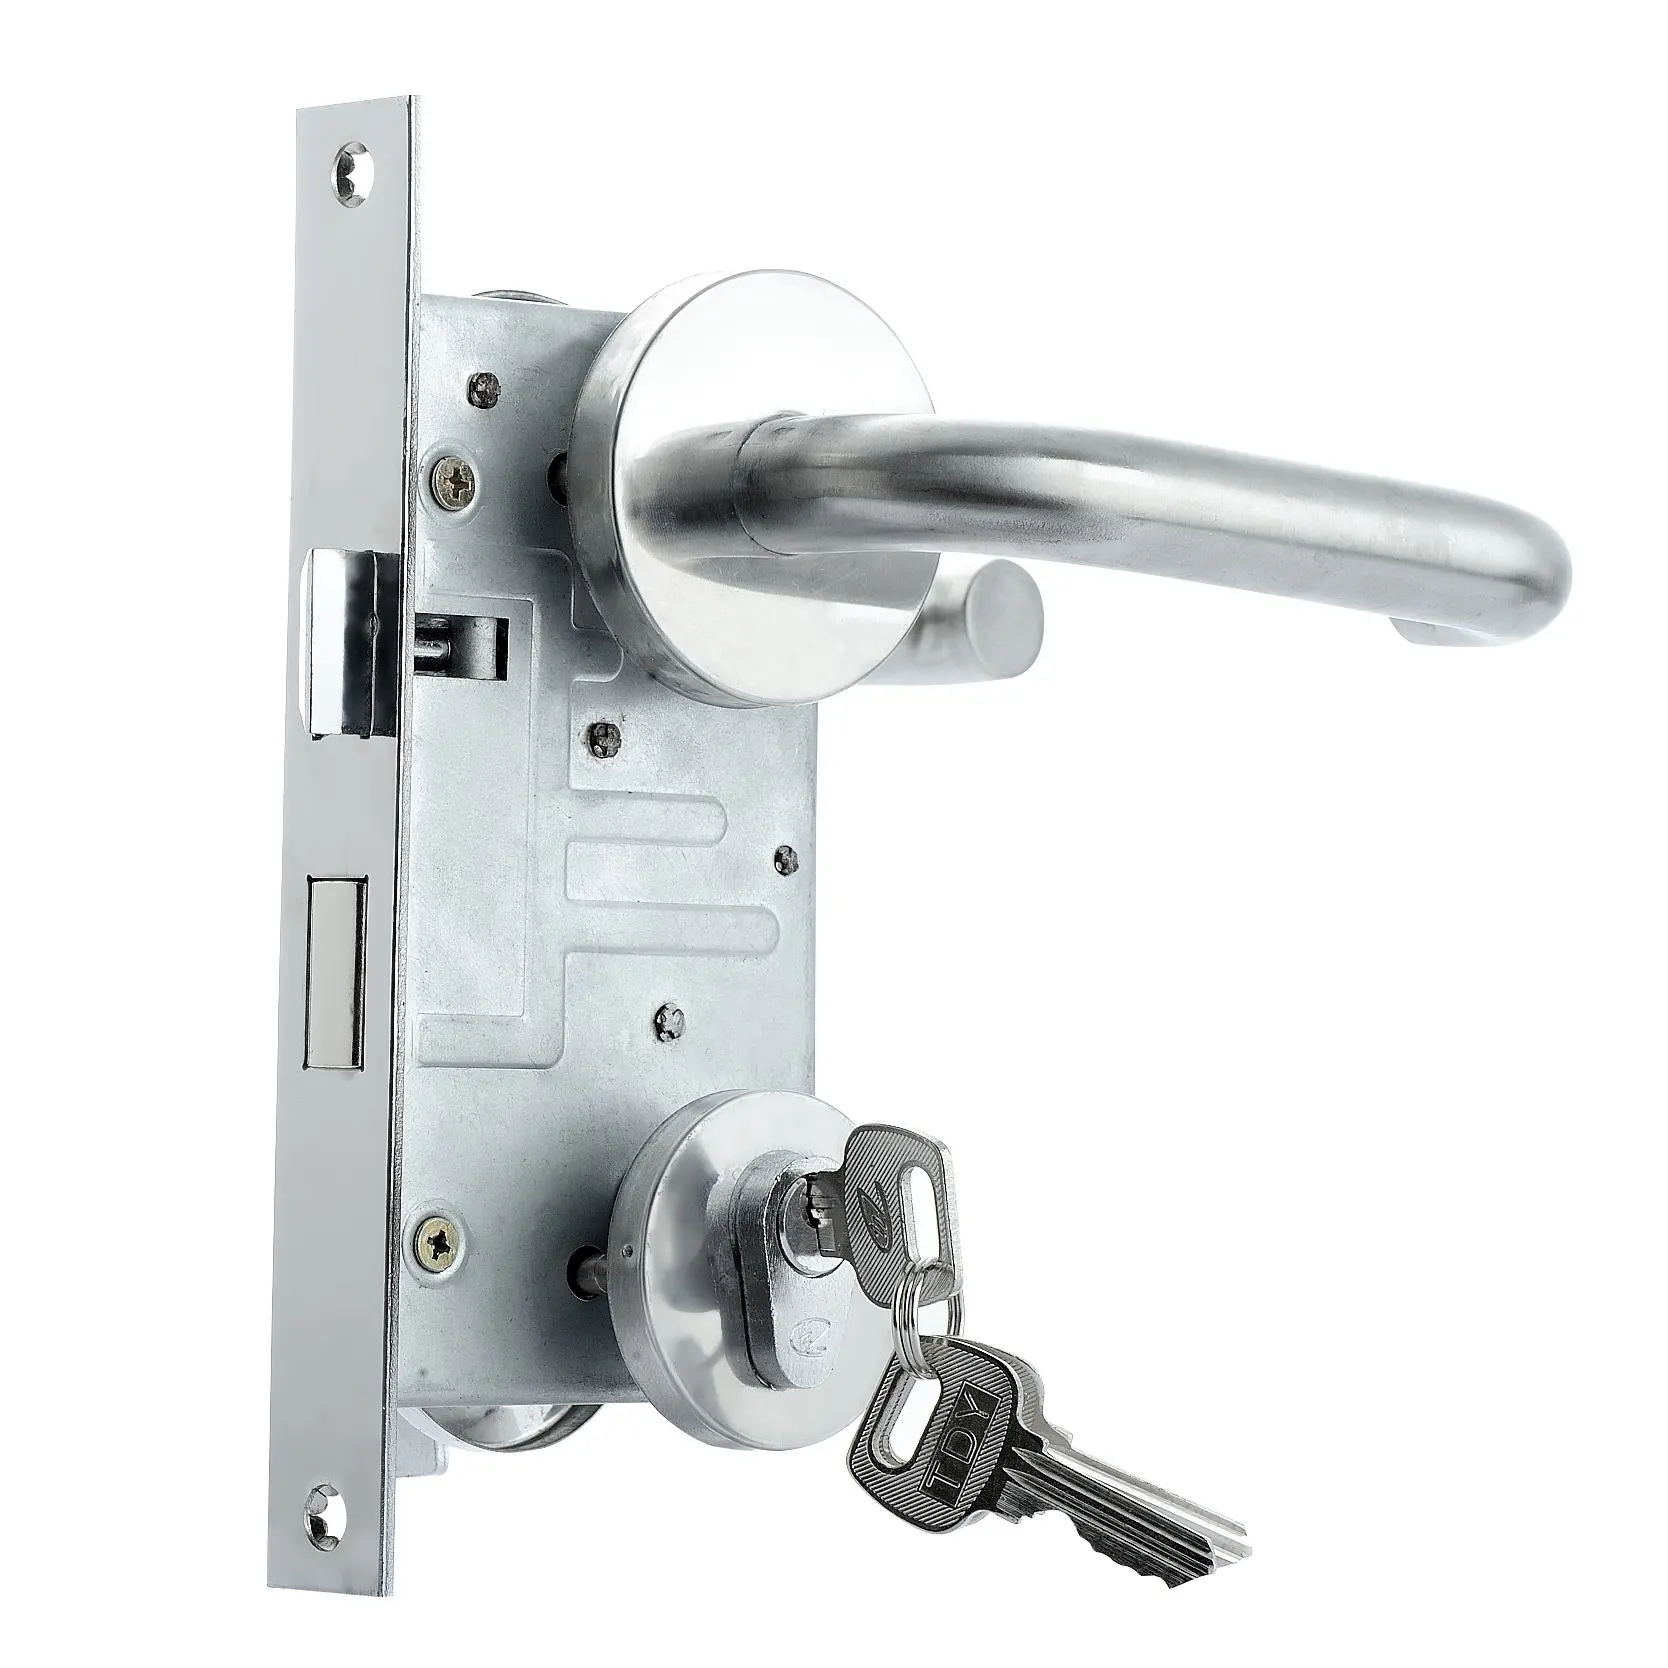 Langgou ล็อคกันไฟ304สแตนเลสล็อคกันไฟ1.5ชั่วโมงล็อคประตูรักษาความปลอดภัยพร้อมกุญแจ